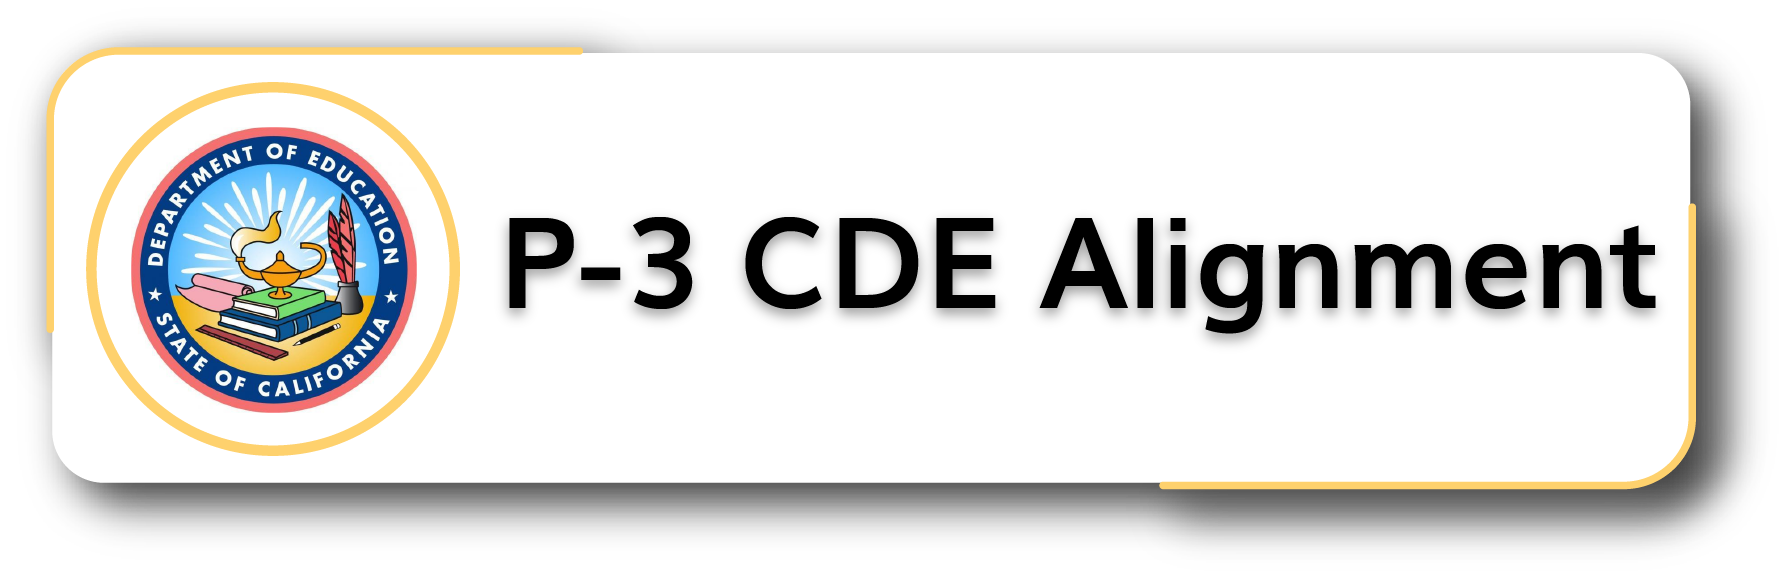 P-3 CDE Alignment Button